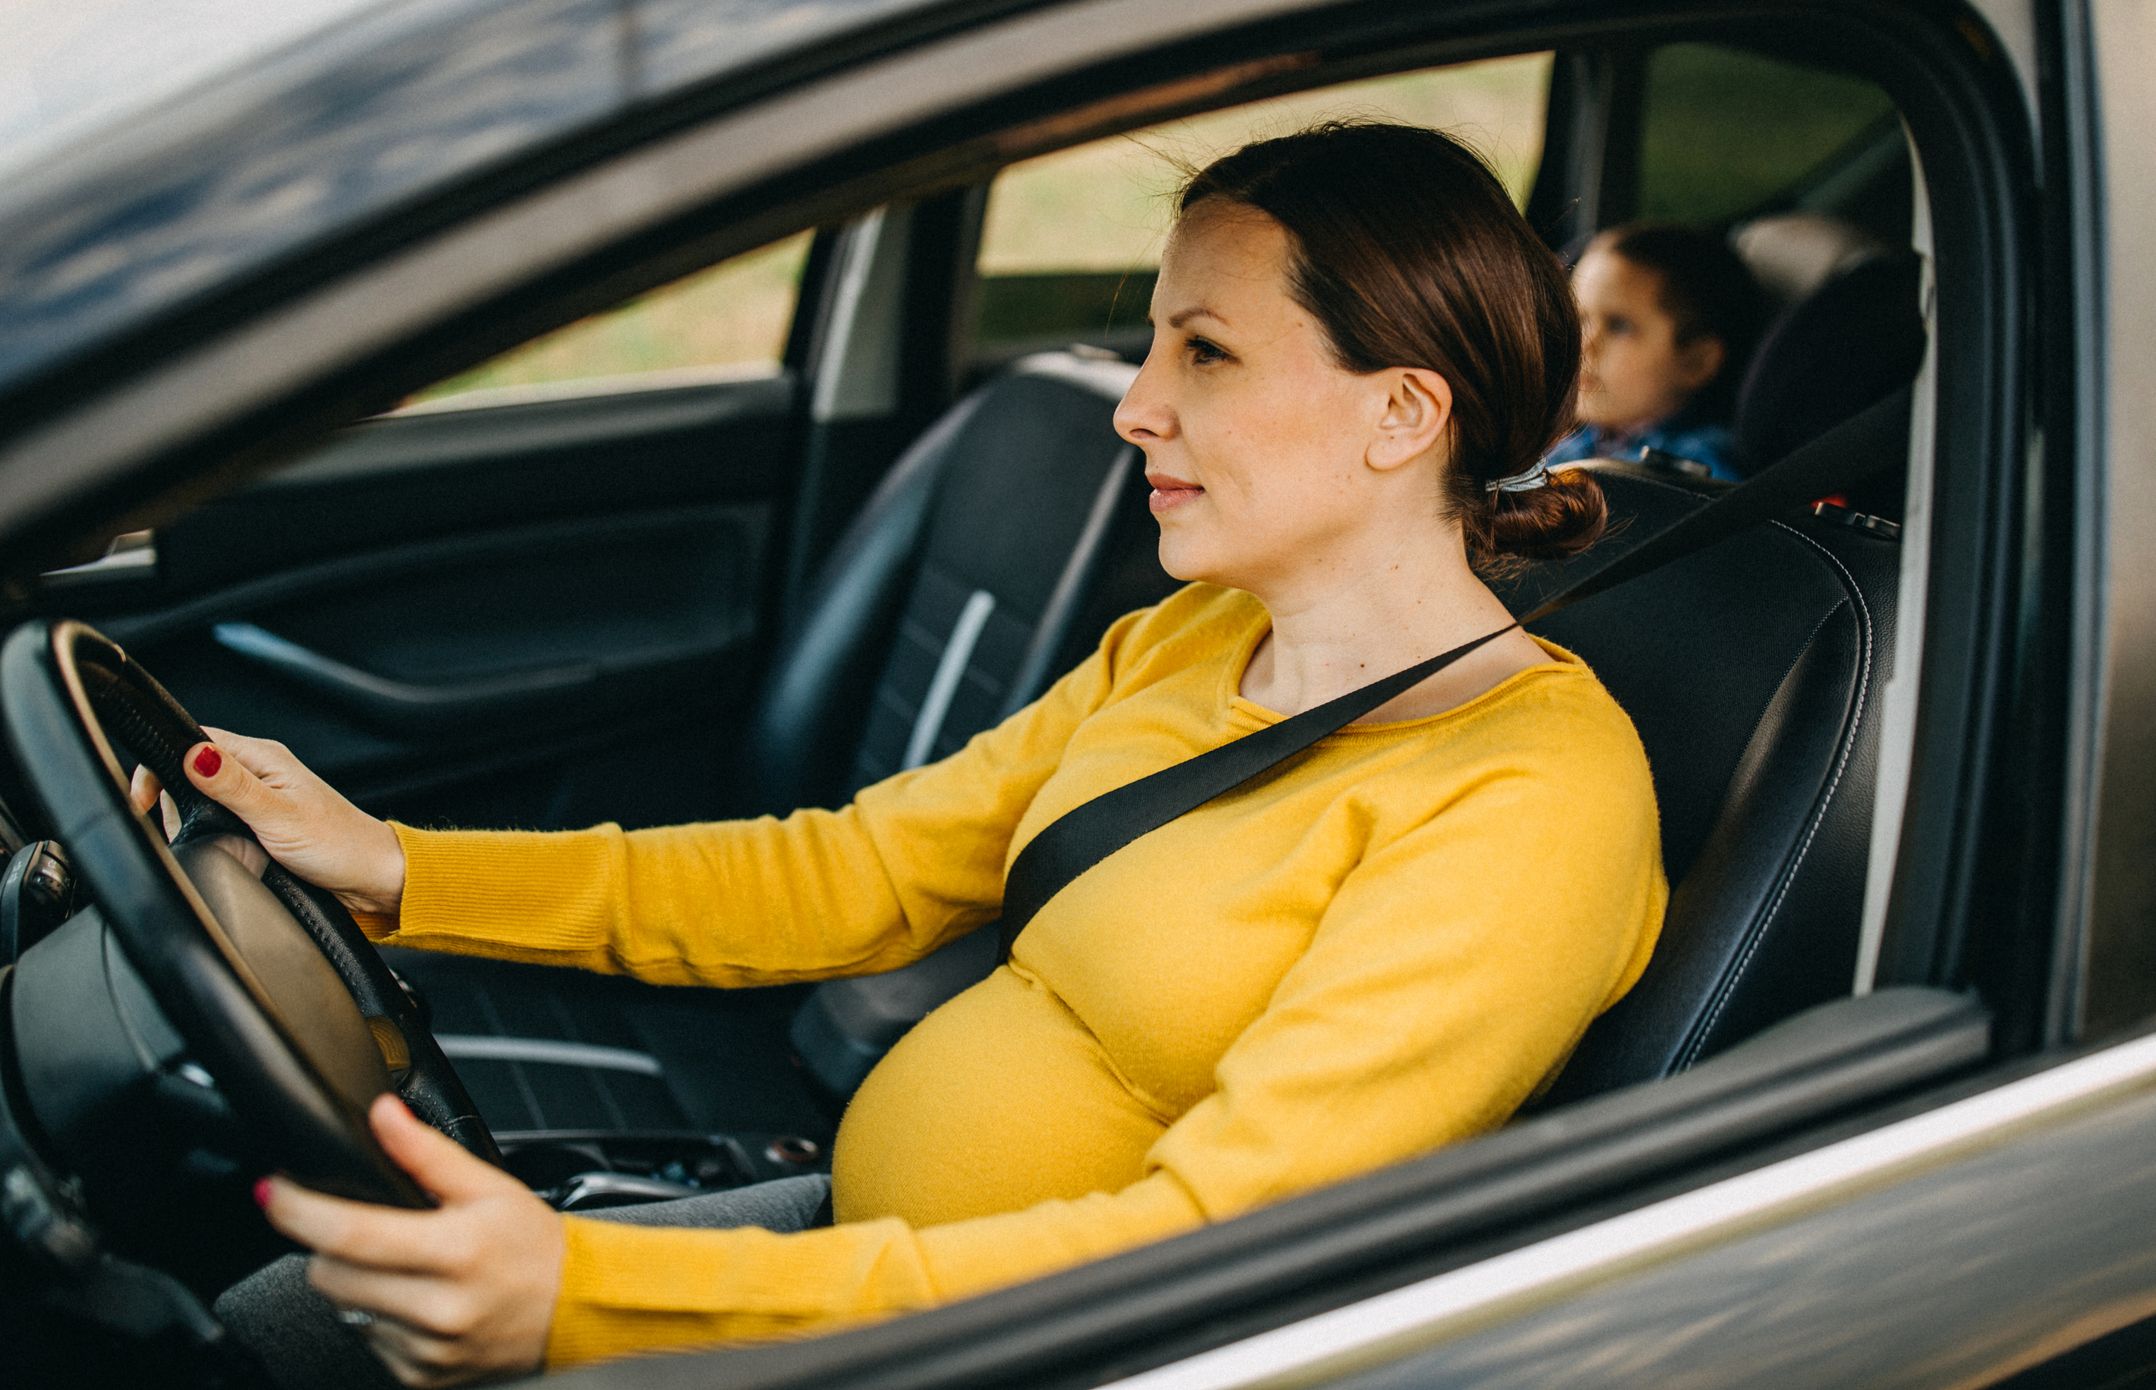 Studie zeigt: 4 von 10 Schwangeren verwenden den Fahrzeuggurt falsch